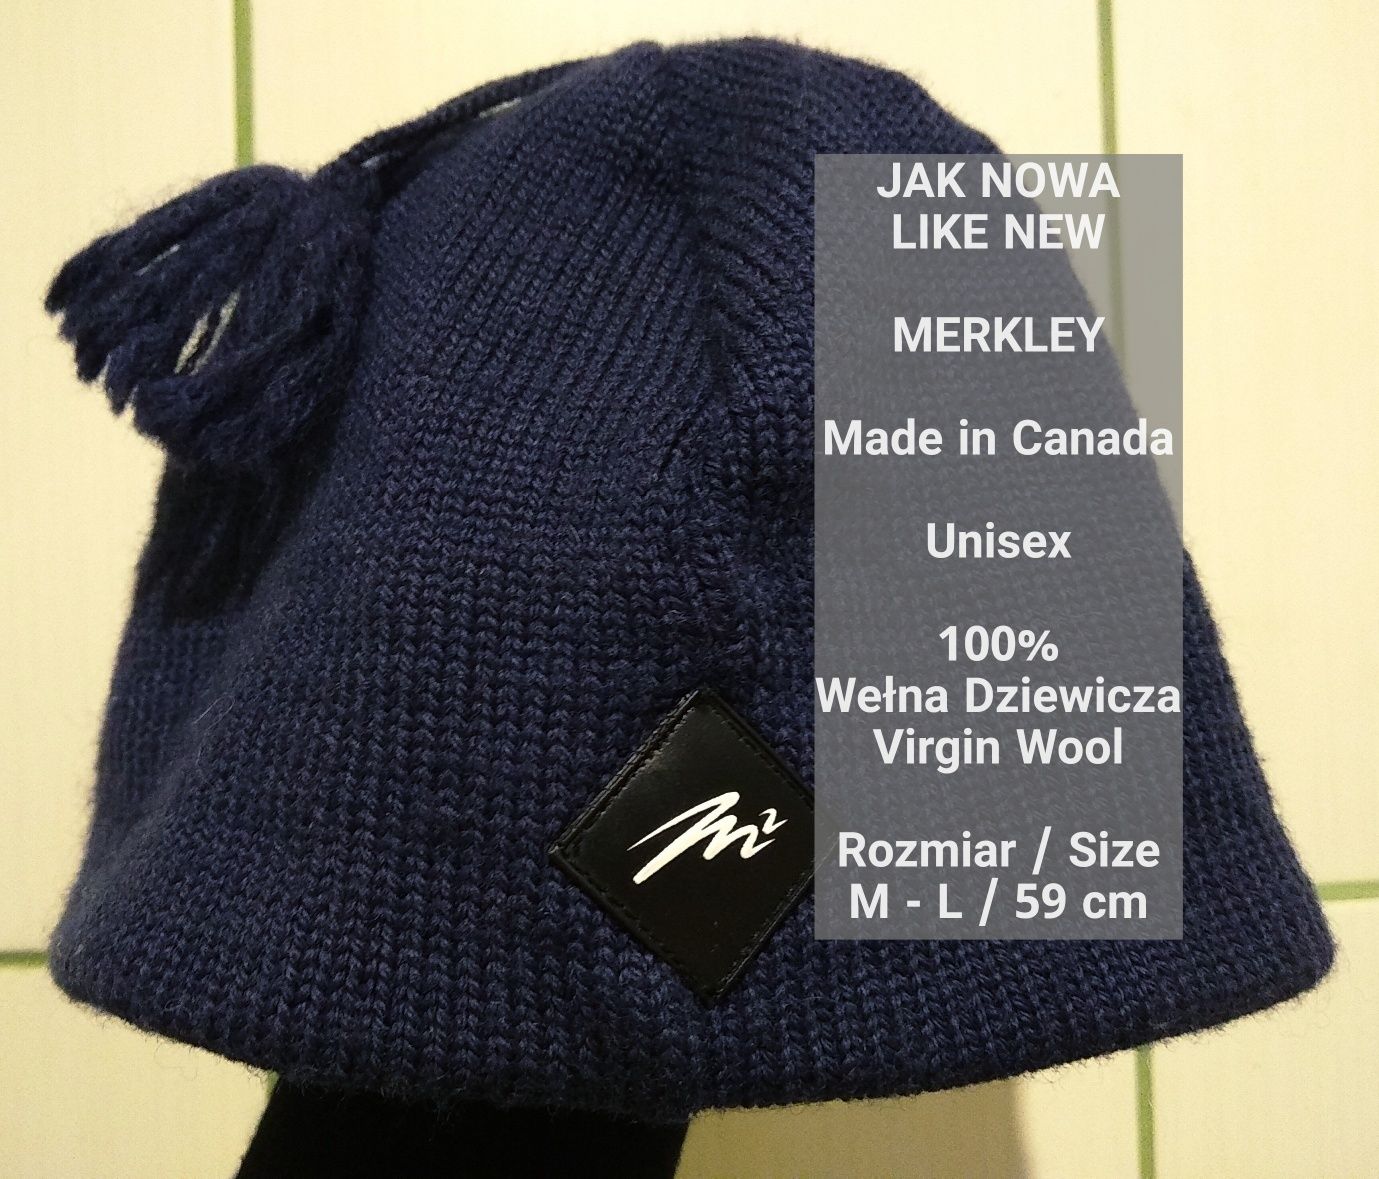 Merkley  Kanadyjska wełniana czapka zimowa, 100% Wełna, M-L / 59 cm
Sp